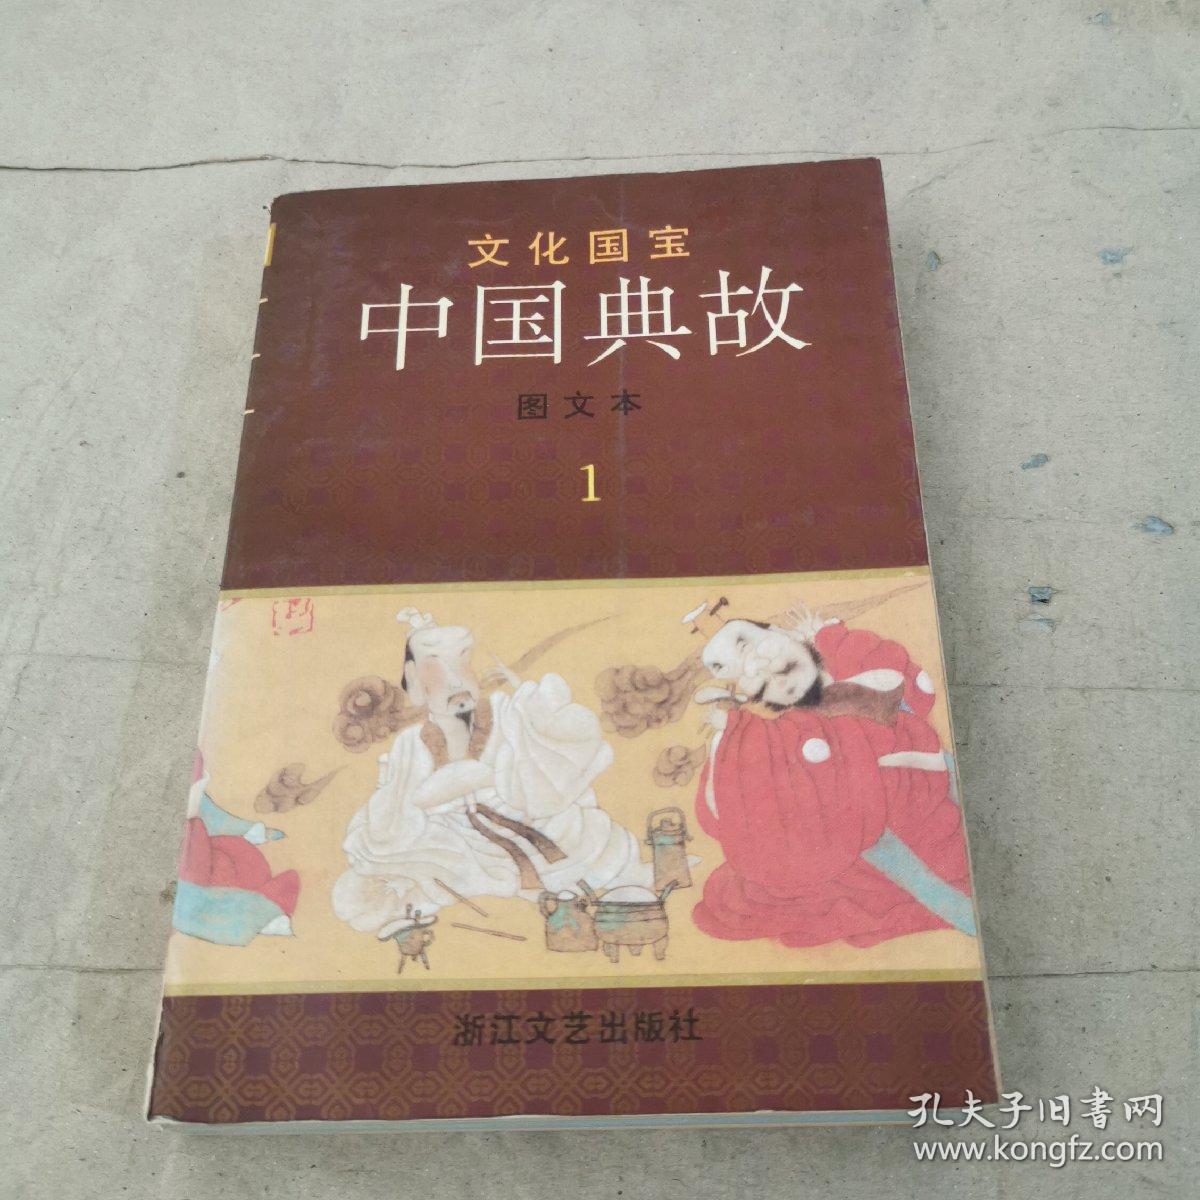 文化国宝 中国典故 图文本 1